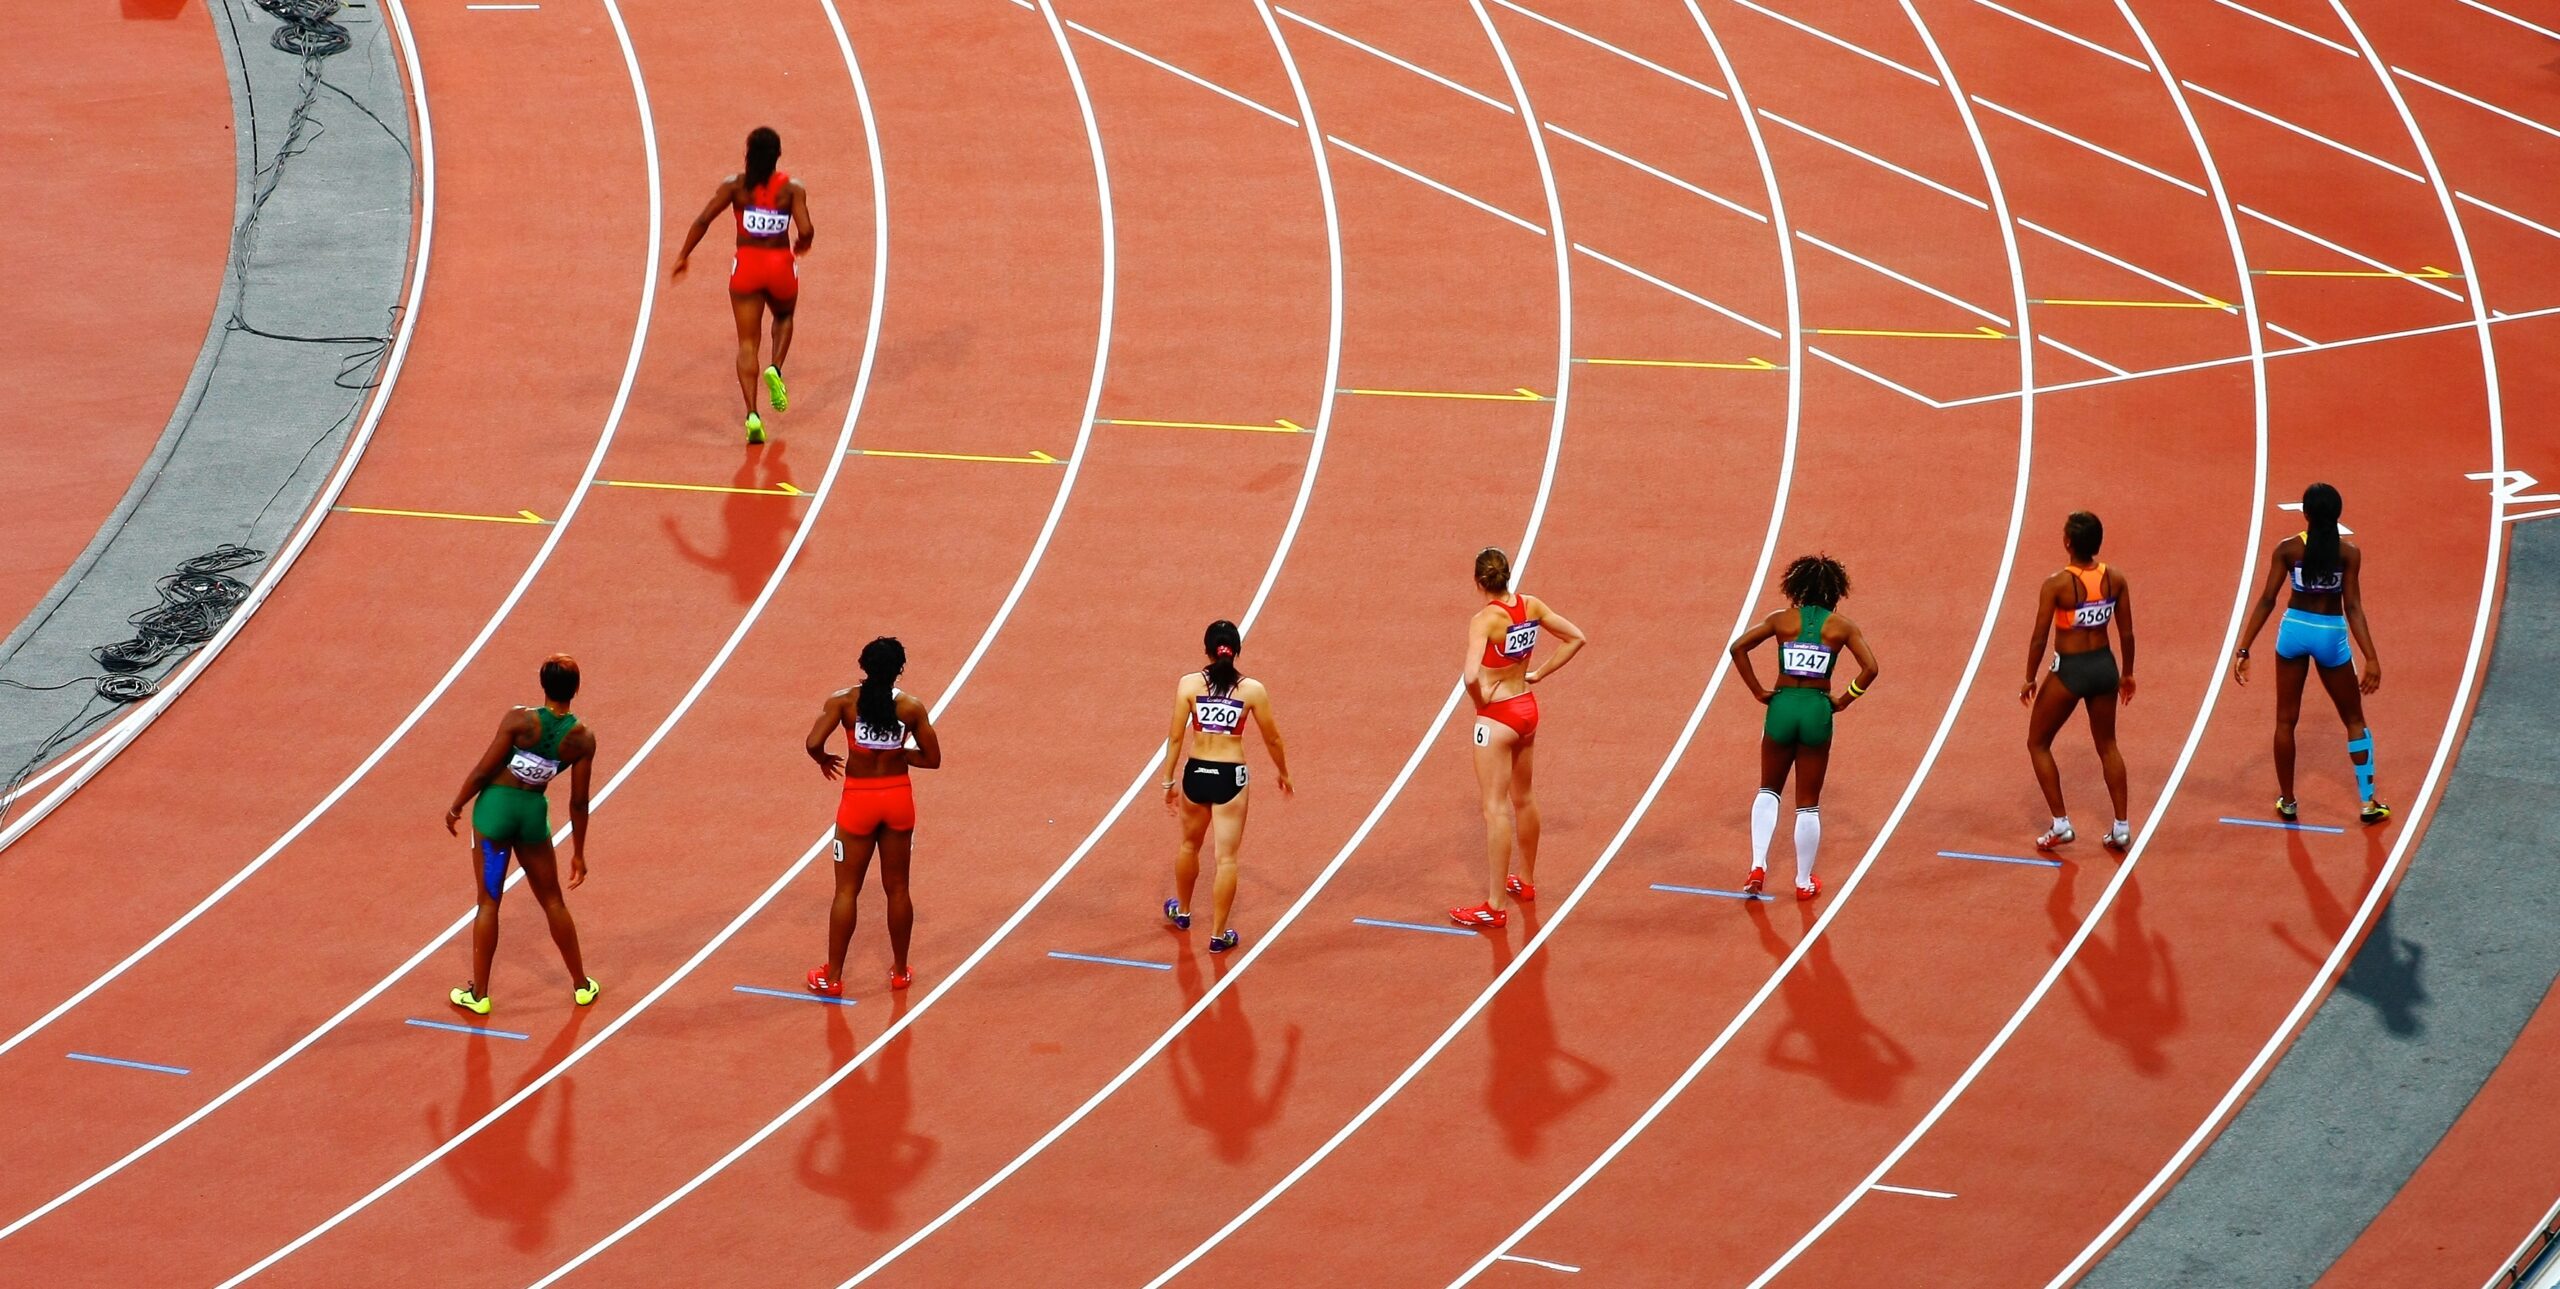 O que significa esportes olímpicos e paralímpicos?